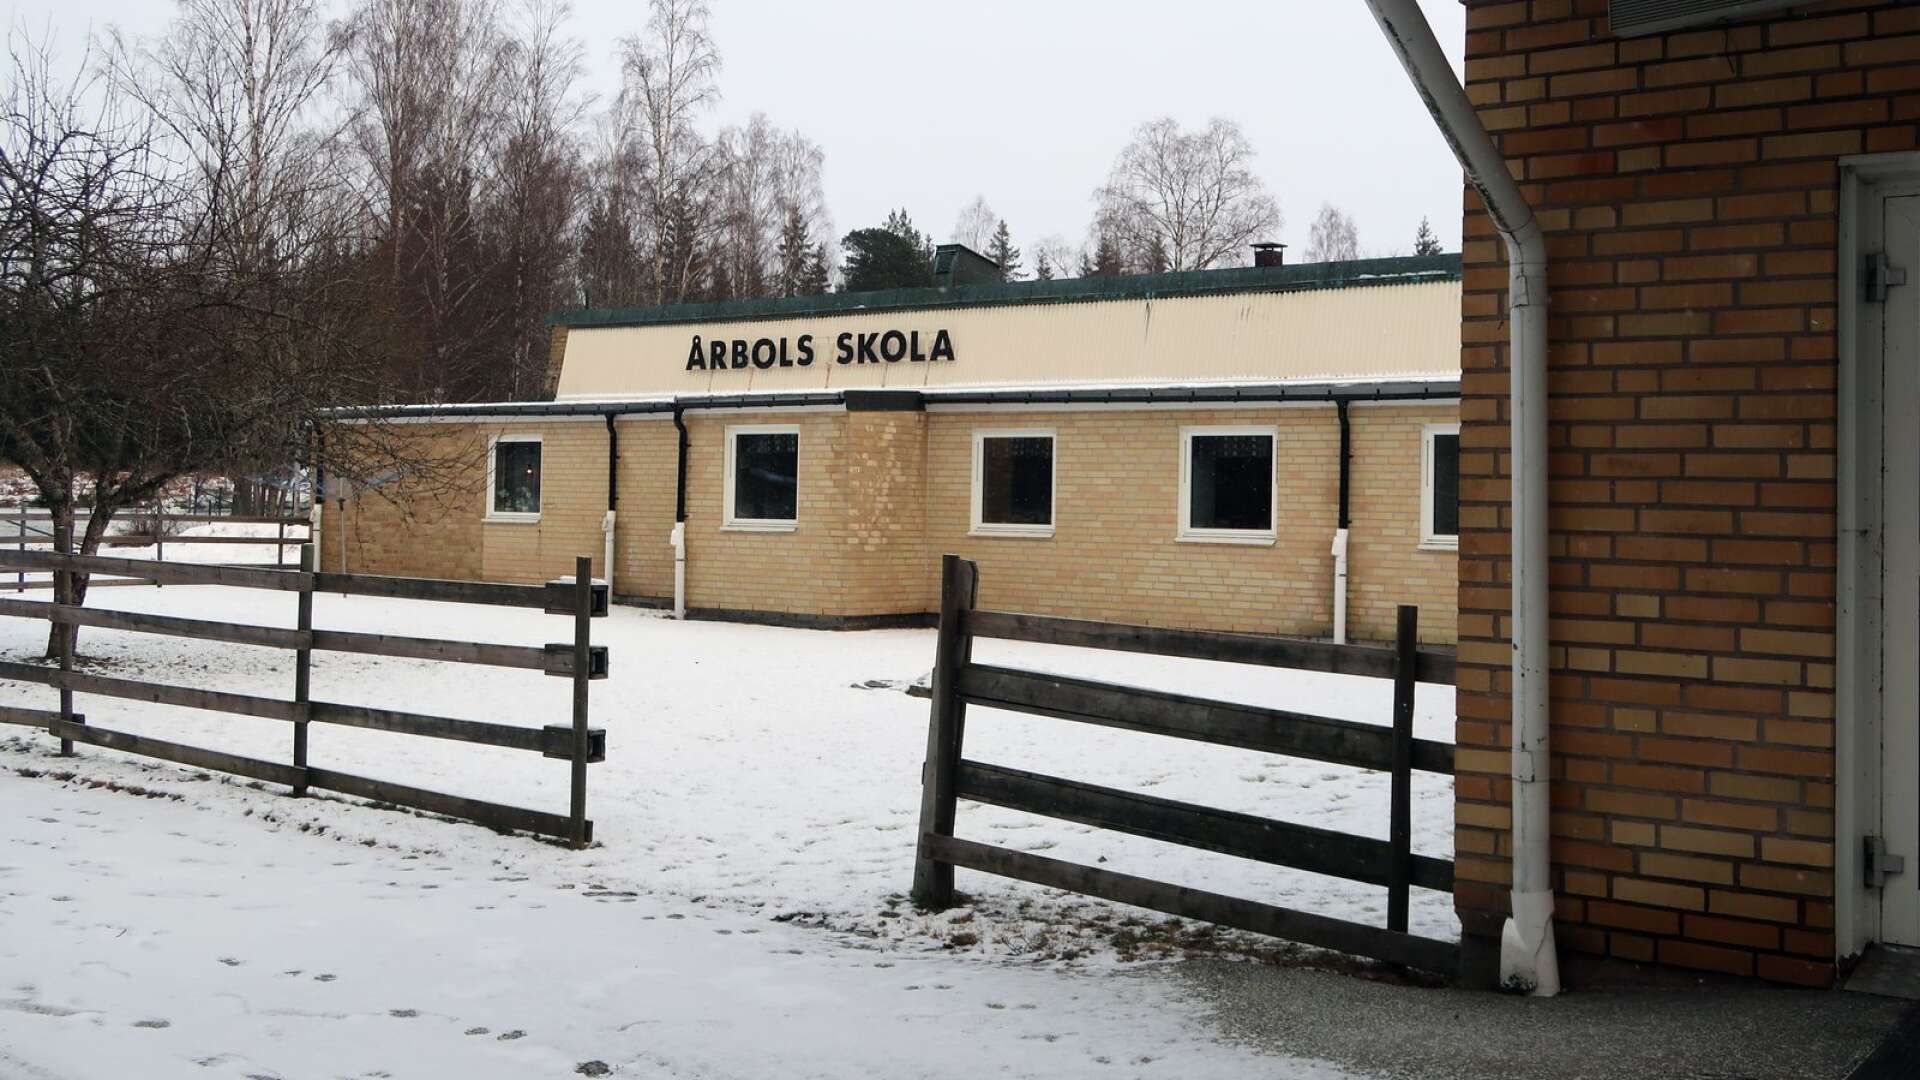 Här vid Årbols skola finns en av de två sporthallar som Bengtsfors kommun kan erbjuda som evakueringsboende för flyktingar från Ukraina.